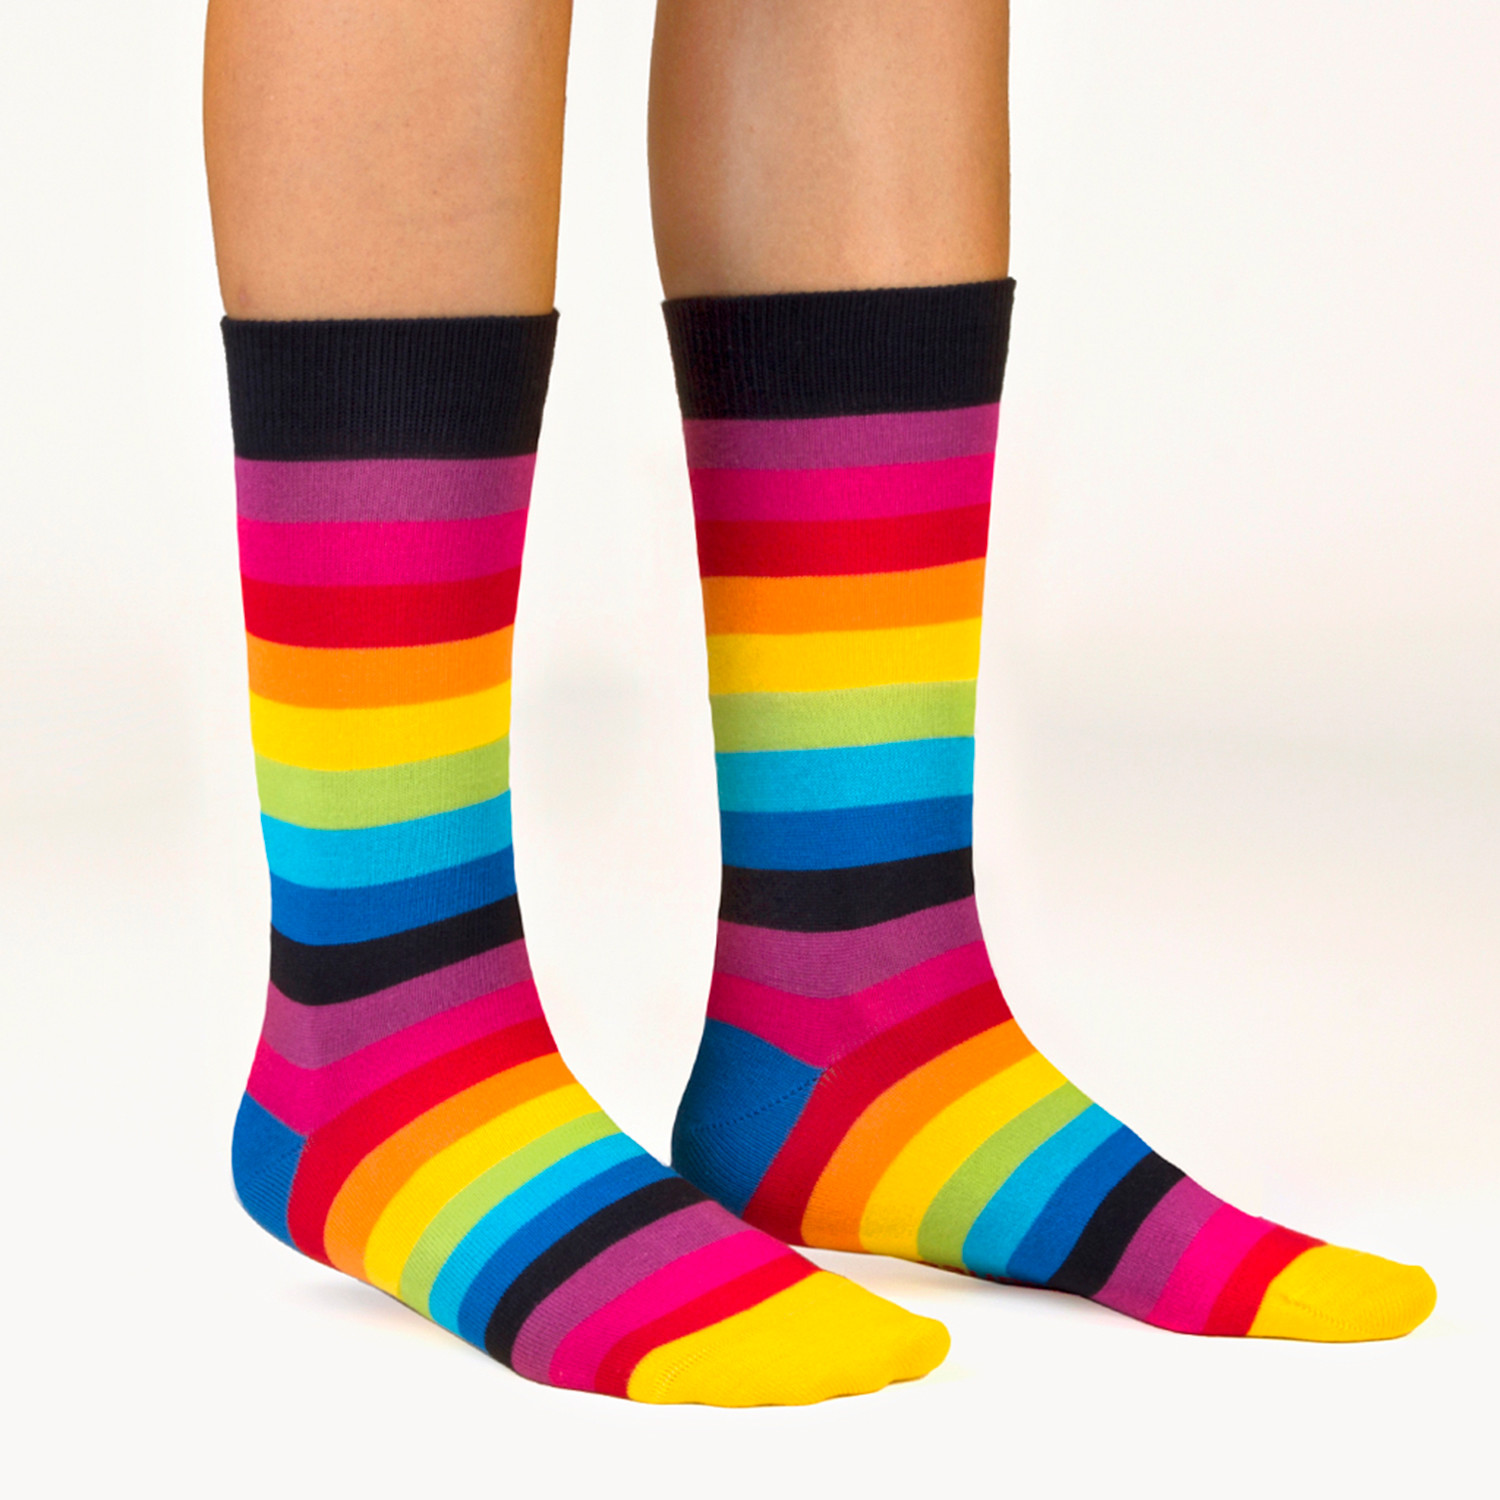 Unisex Socks // Rainbow Socks // 5 Pack - Ballonet - Touch of Modern